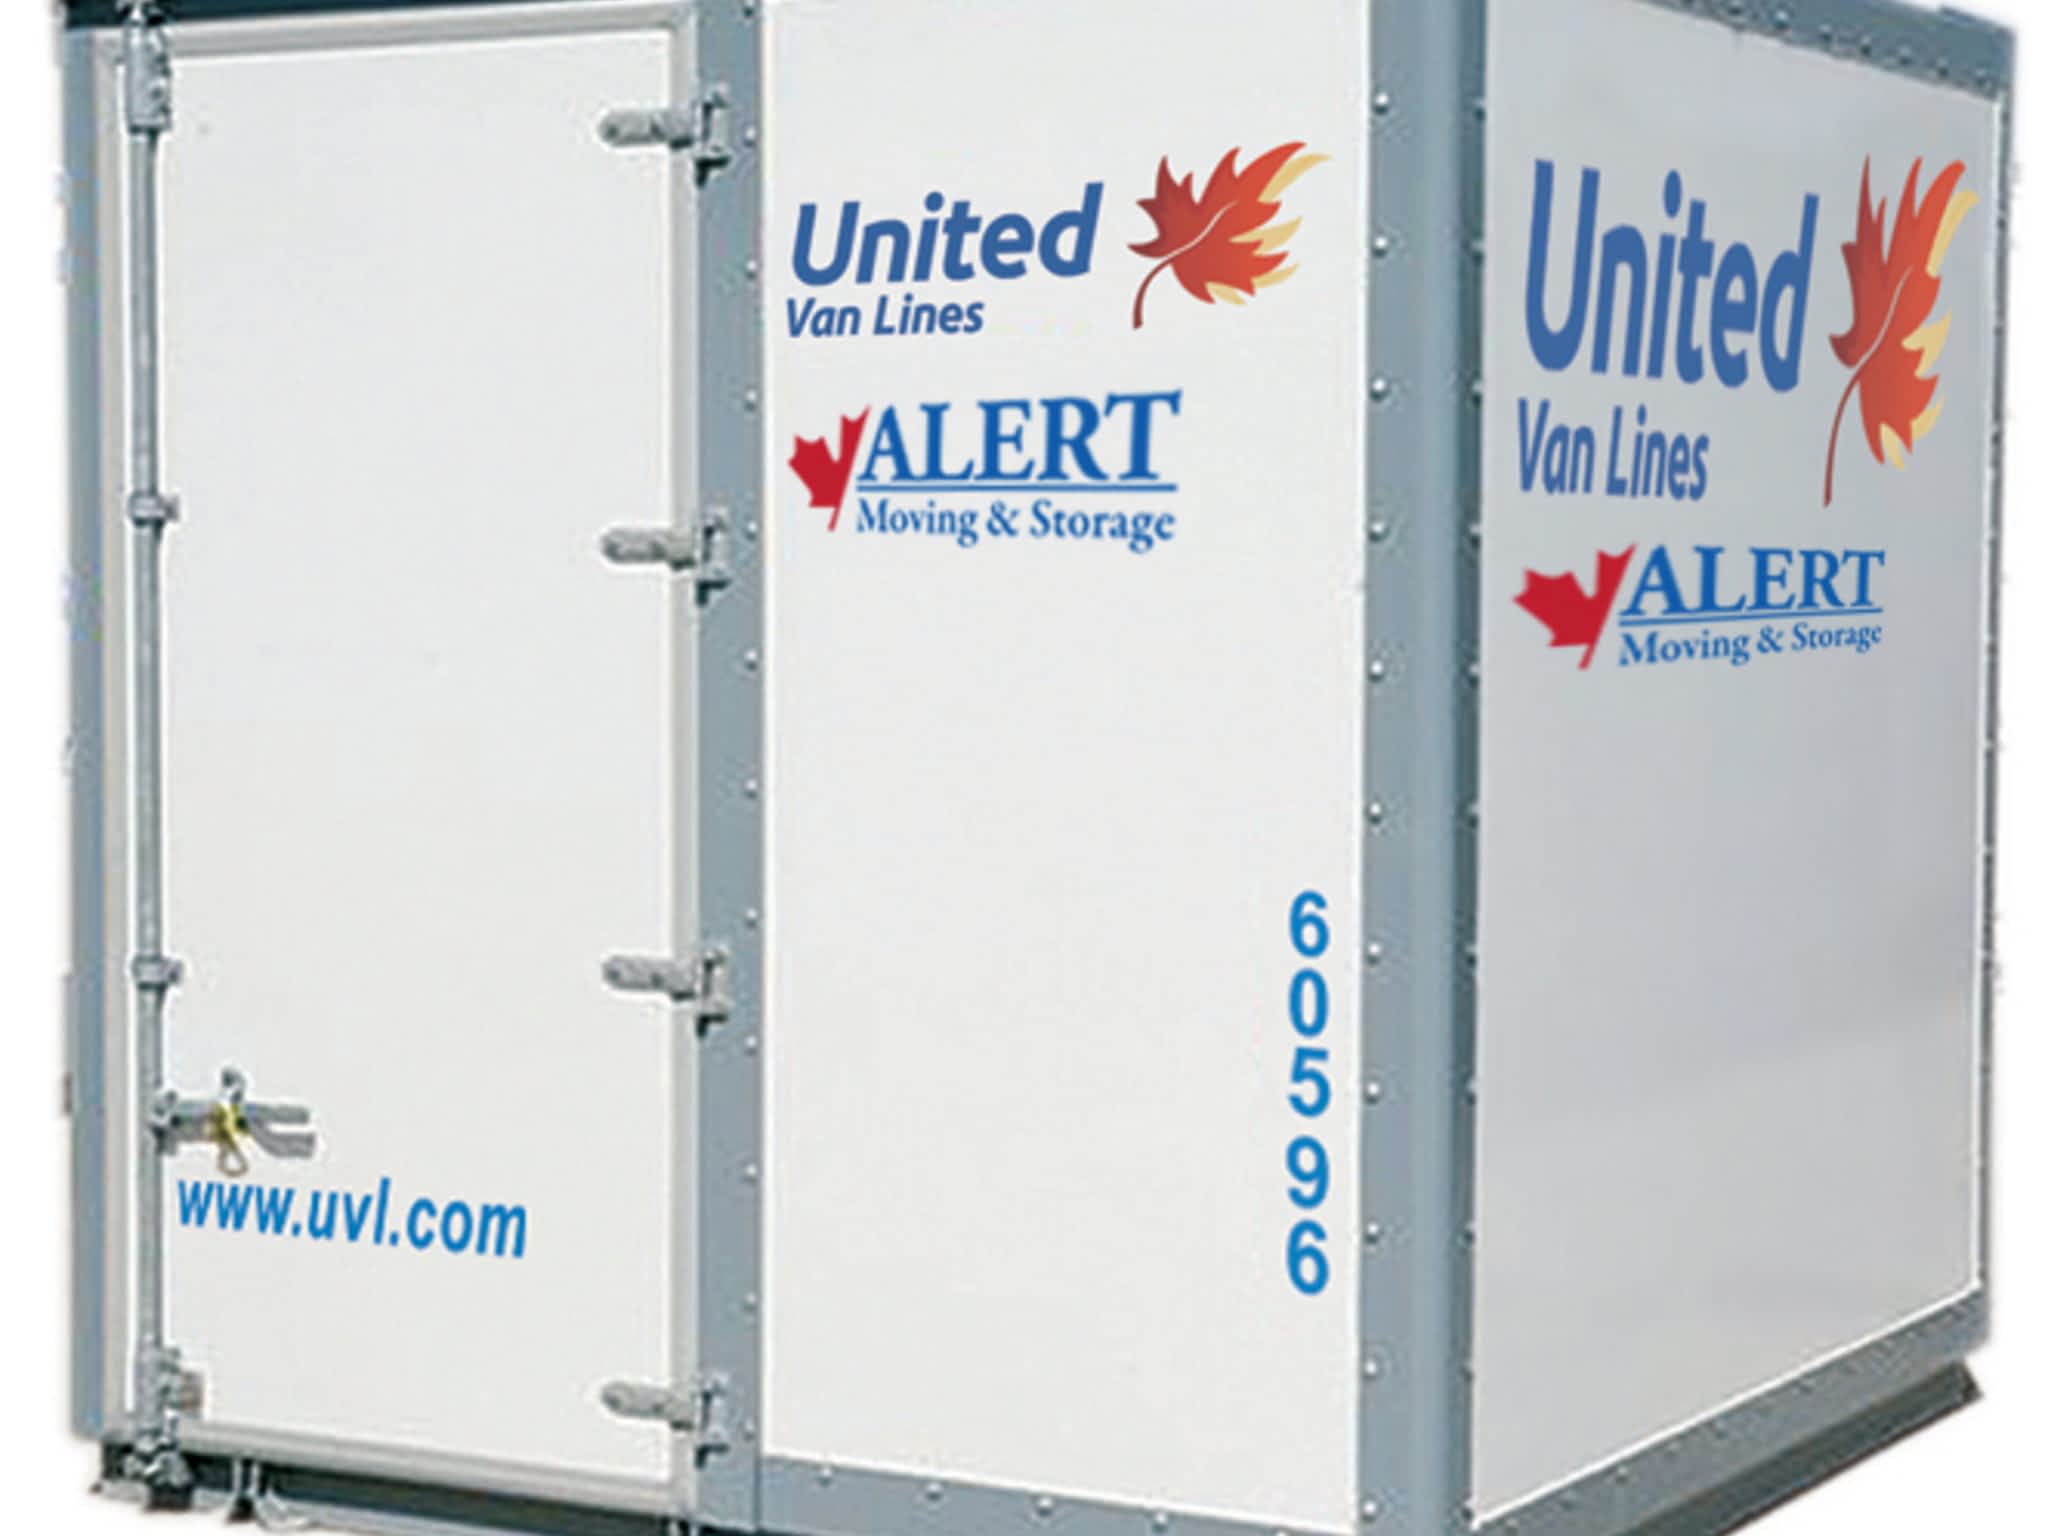 photo Alert Moving & Storage - Member Of United Van Lines